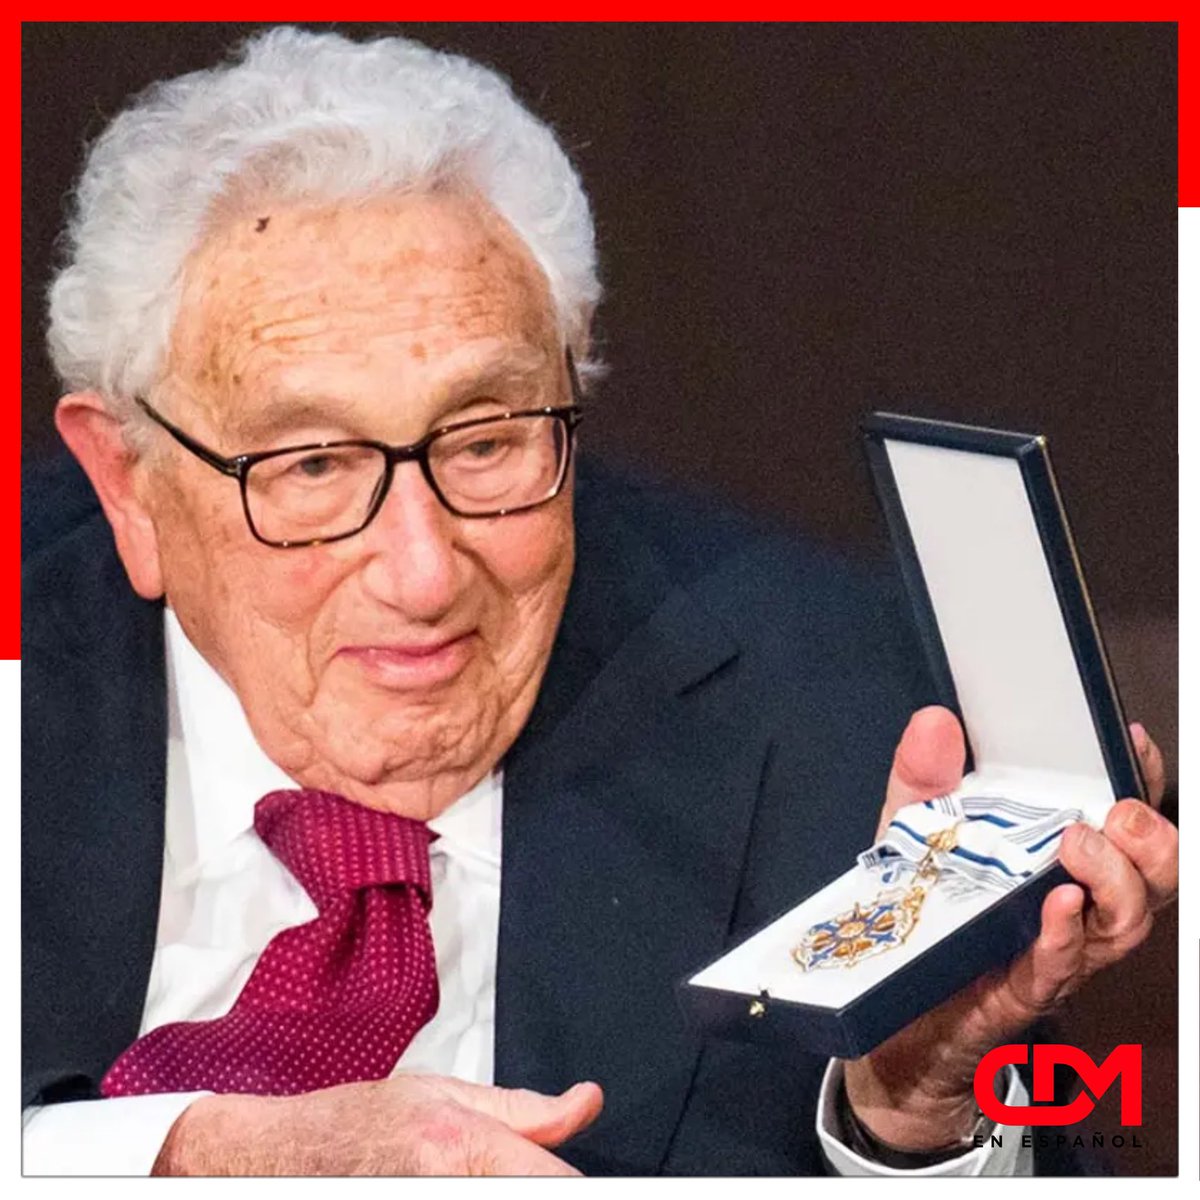 NOTICIAS 🇺🇸 | Fallece el ex secretario de Estado Henry Kissinger a los 100 años de edad.

Henry Kissinger murió en su casa de Connecticut EE. UU.

🔗 Link en el perfil

#CDMenEspañol #NoticiasenEspañol #NoticiasUSA #EstadosUnidos #SecretariodeEstado #HenryKissinger #Conneticut